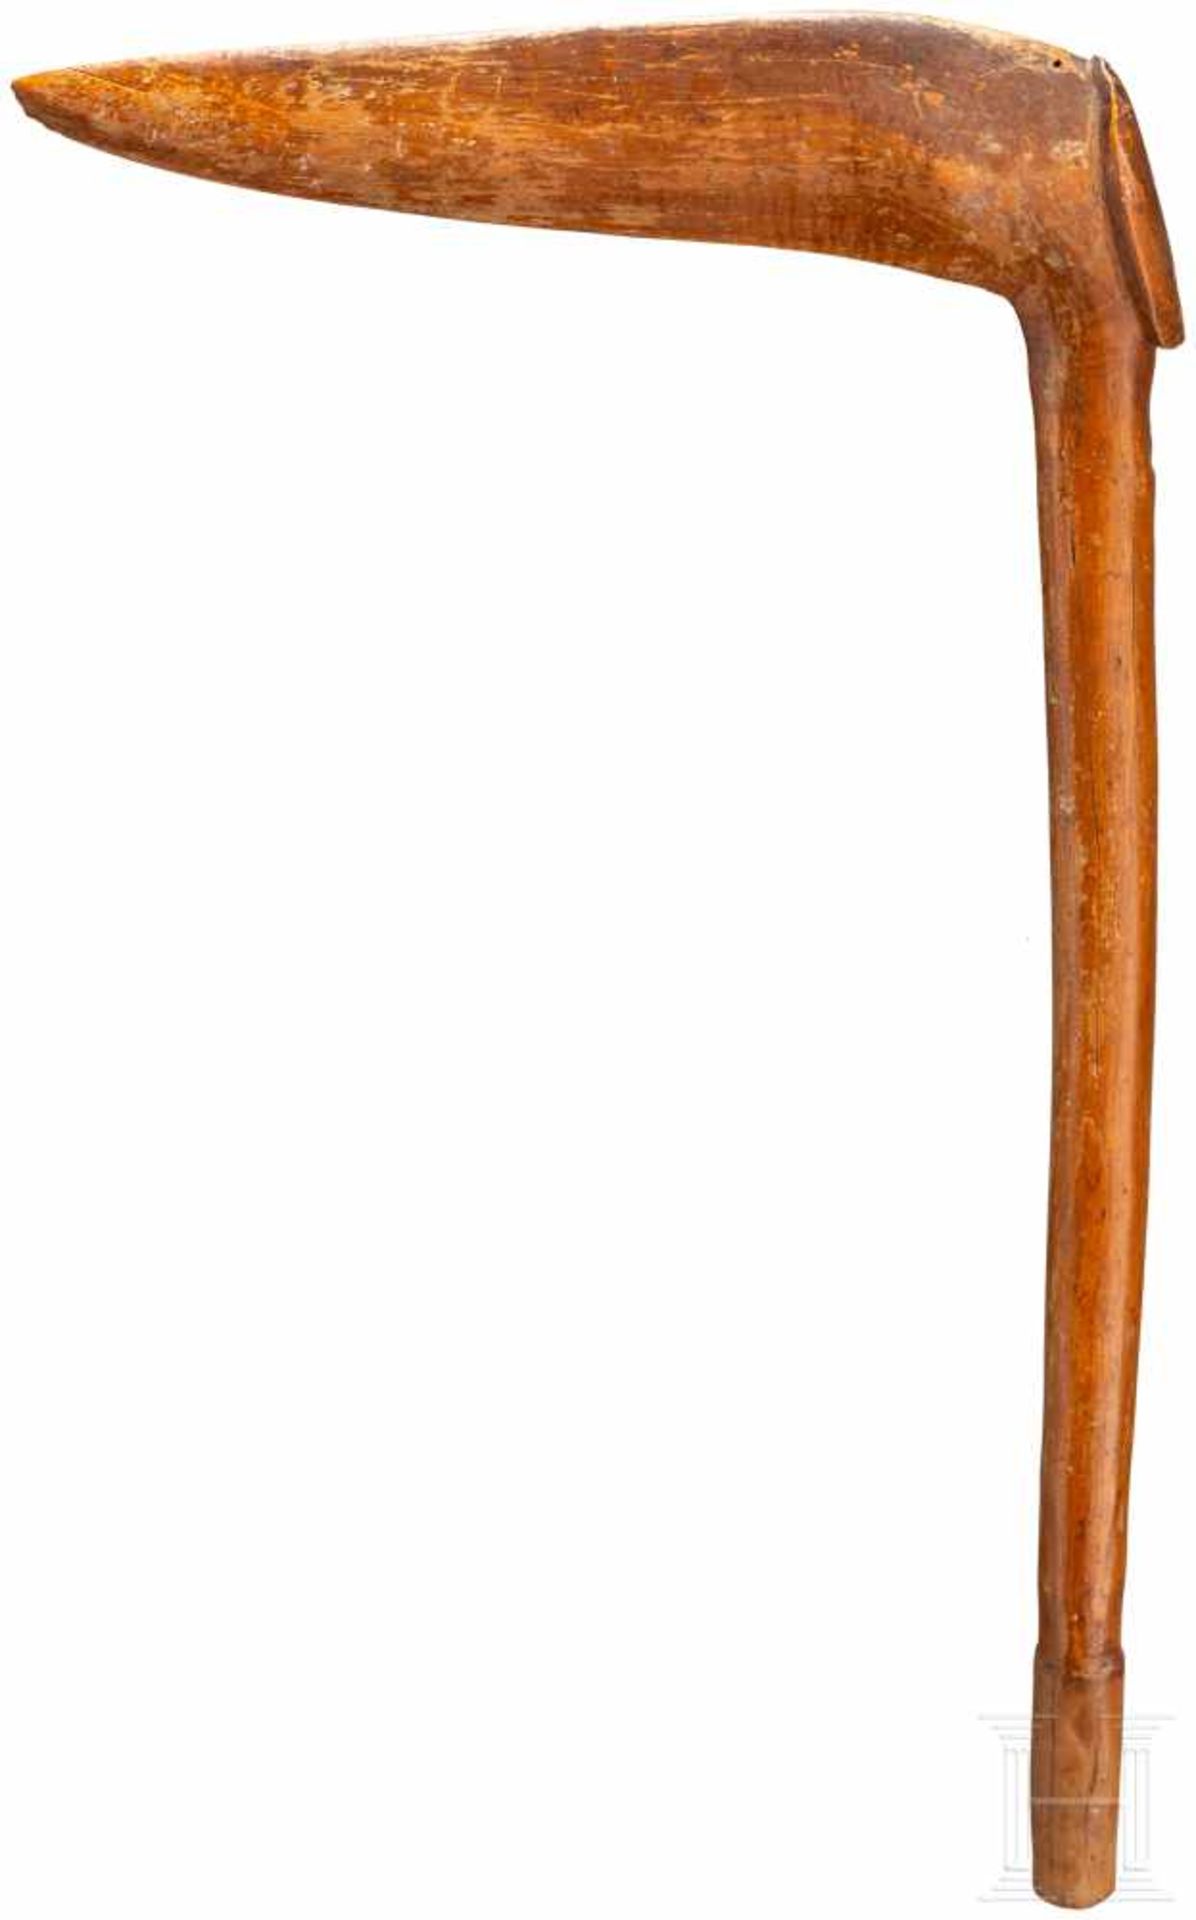 Vogelkopfkeule, NeukaledonienBeschnitzter Schlagkopf in Form eines stilisierten Vogelkopfes, mit - Bild 2 aus 2